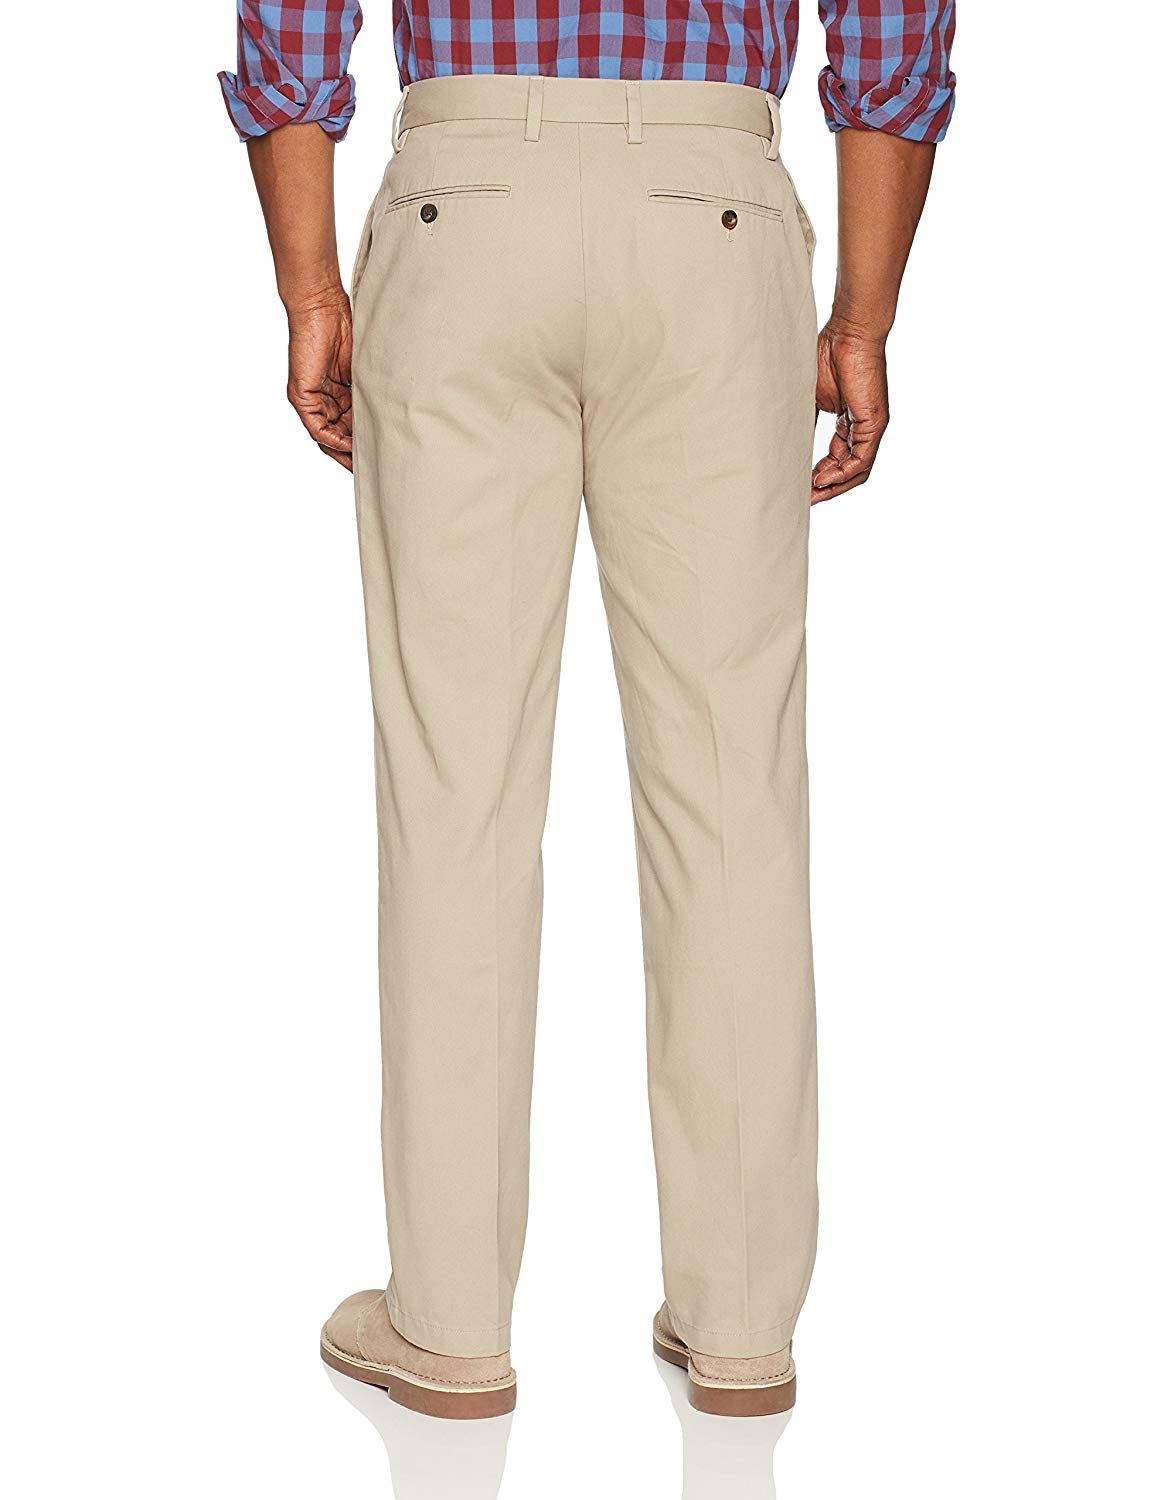 Essentials Men's Classic-Fit Wrinkle-Resistant, Khaki, Size 40W x 28L ...